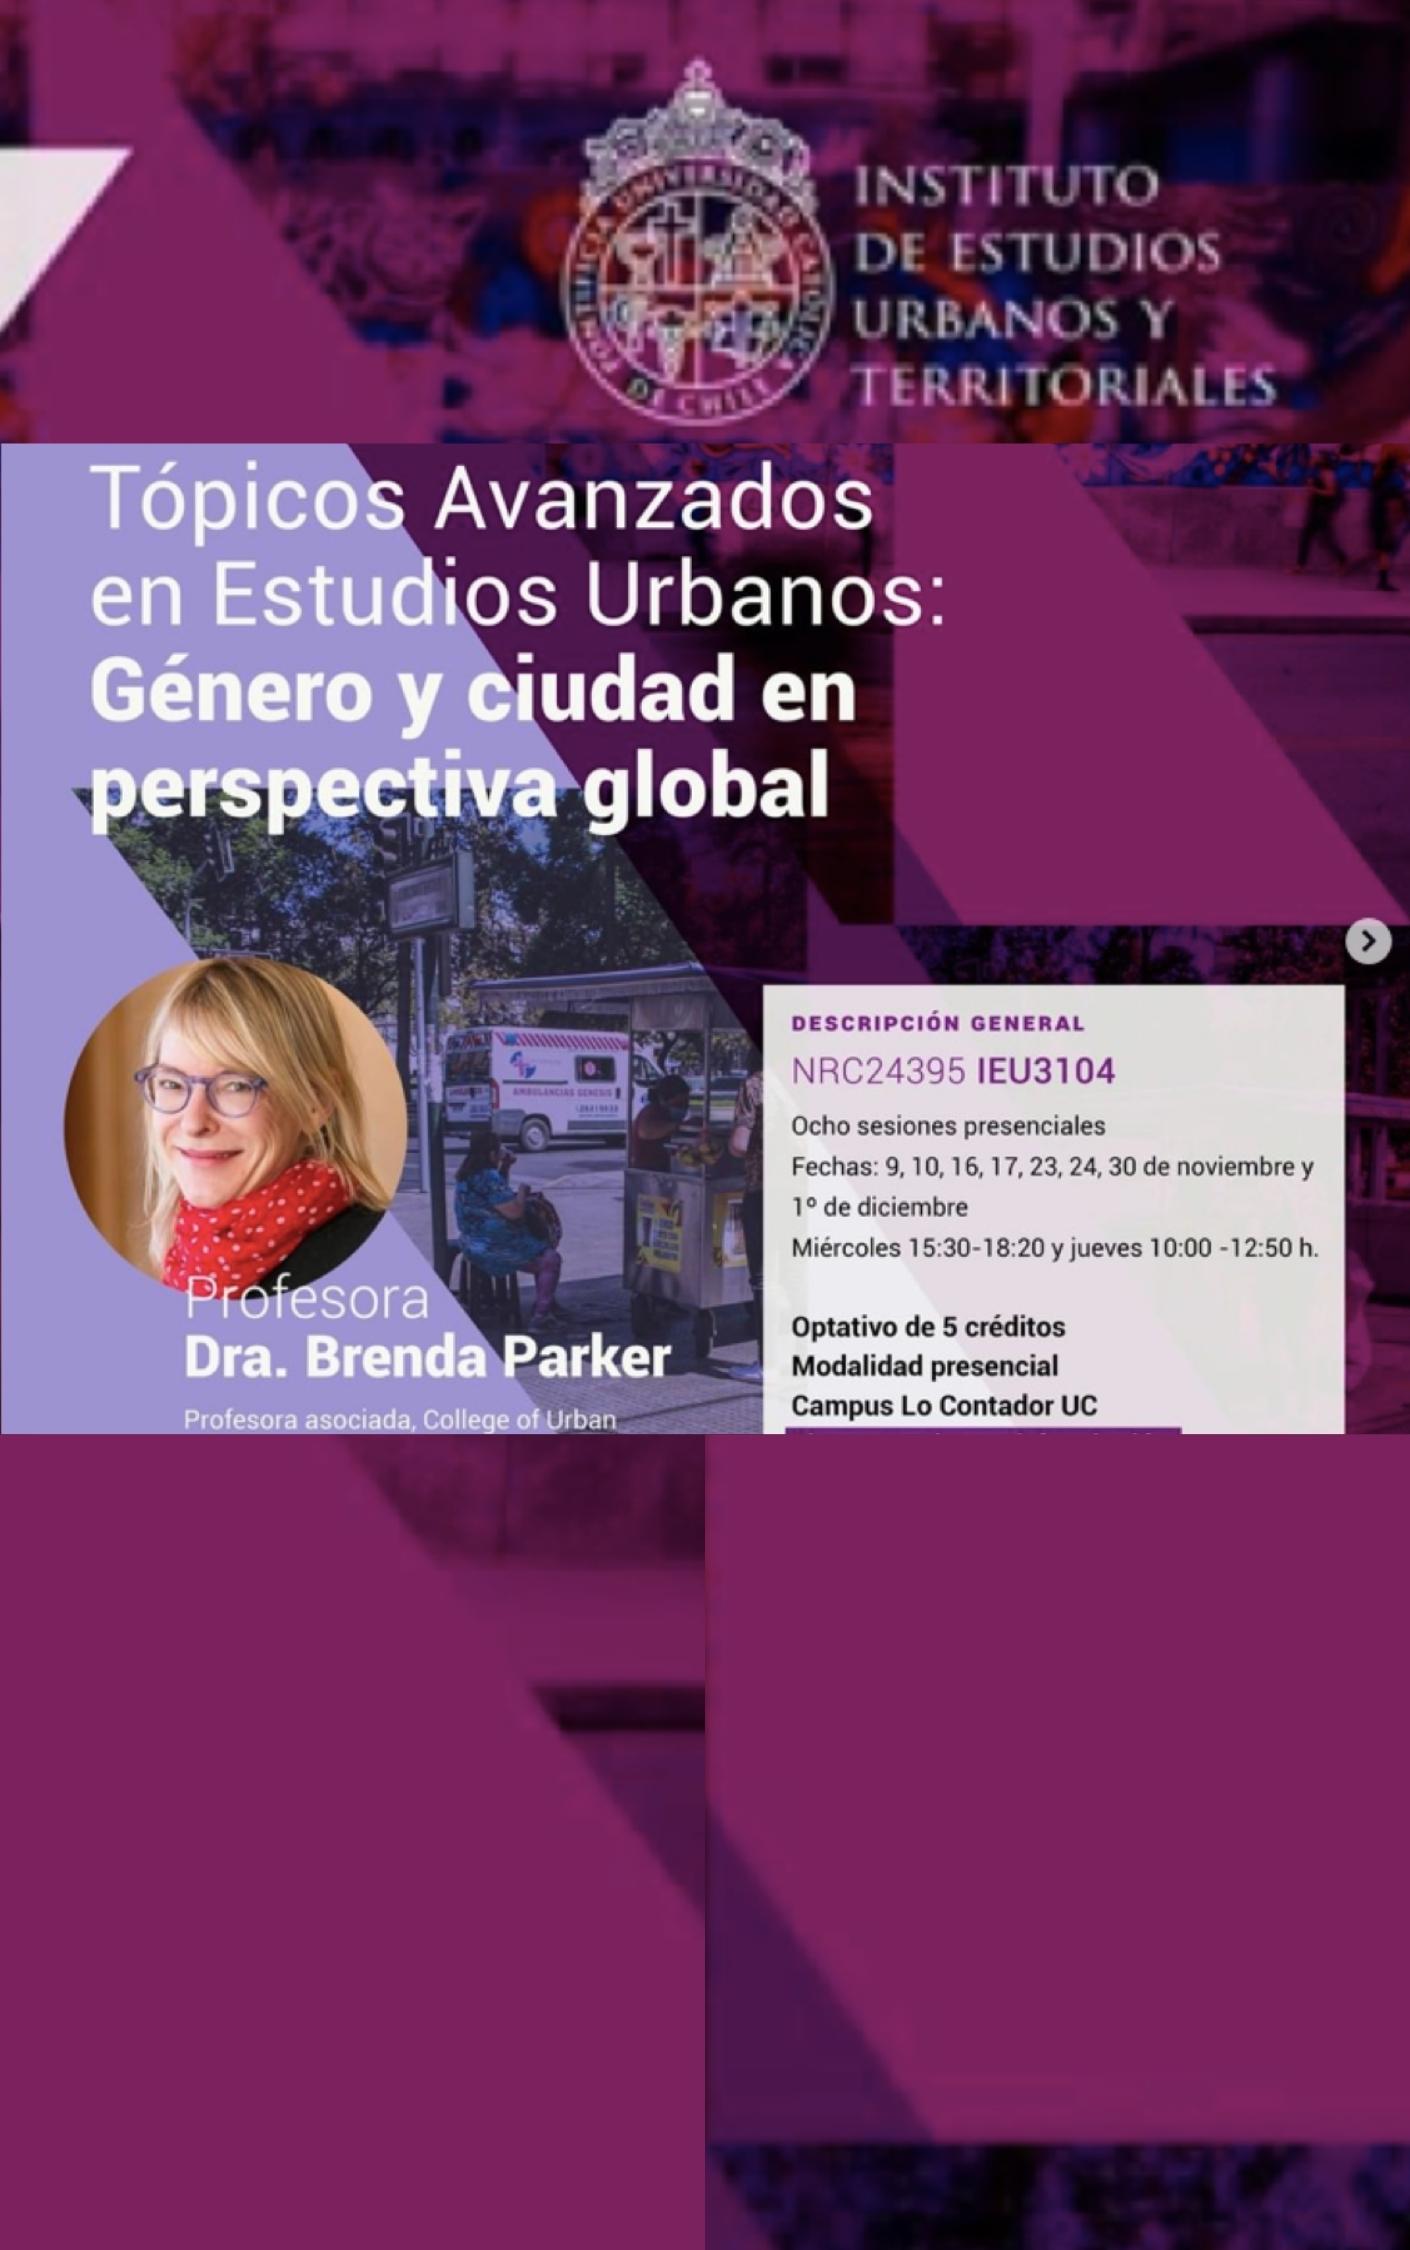 Brenda Parker, destacada experta internacional en temas de género y ciudad, ofrecerá jornada de investigación y curso gratuito de postgrado durante su visita en Campus Lo Contador